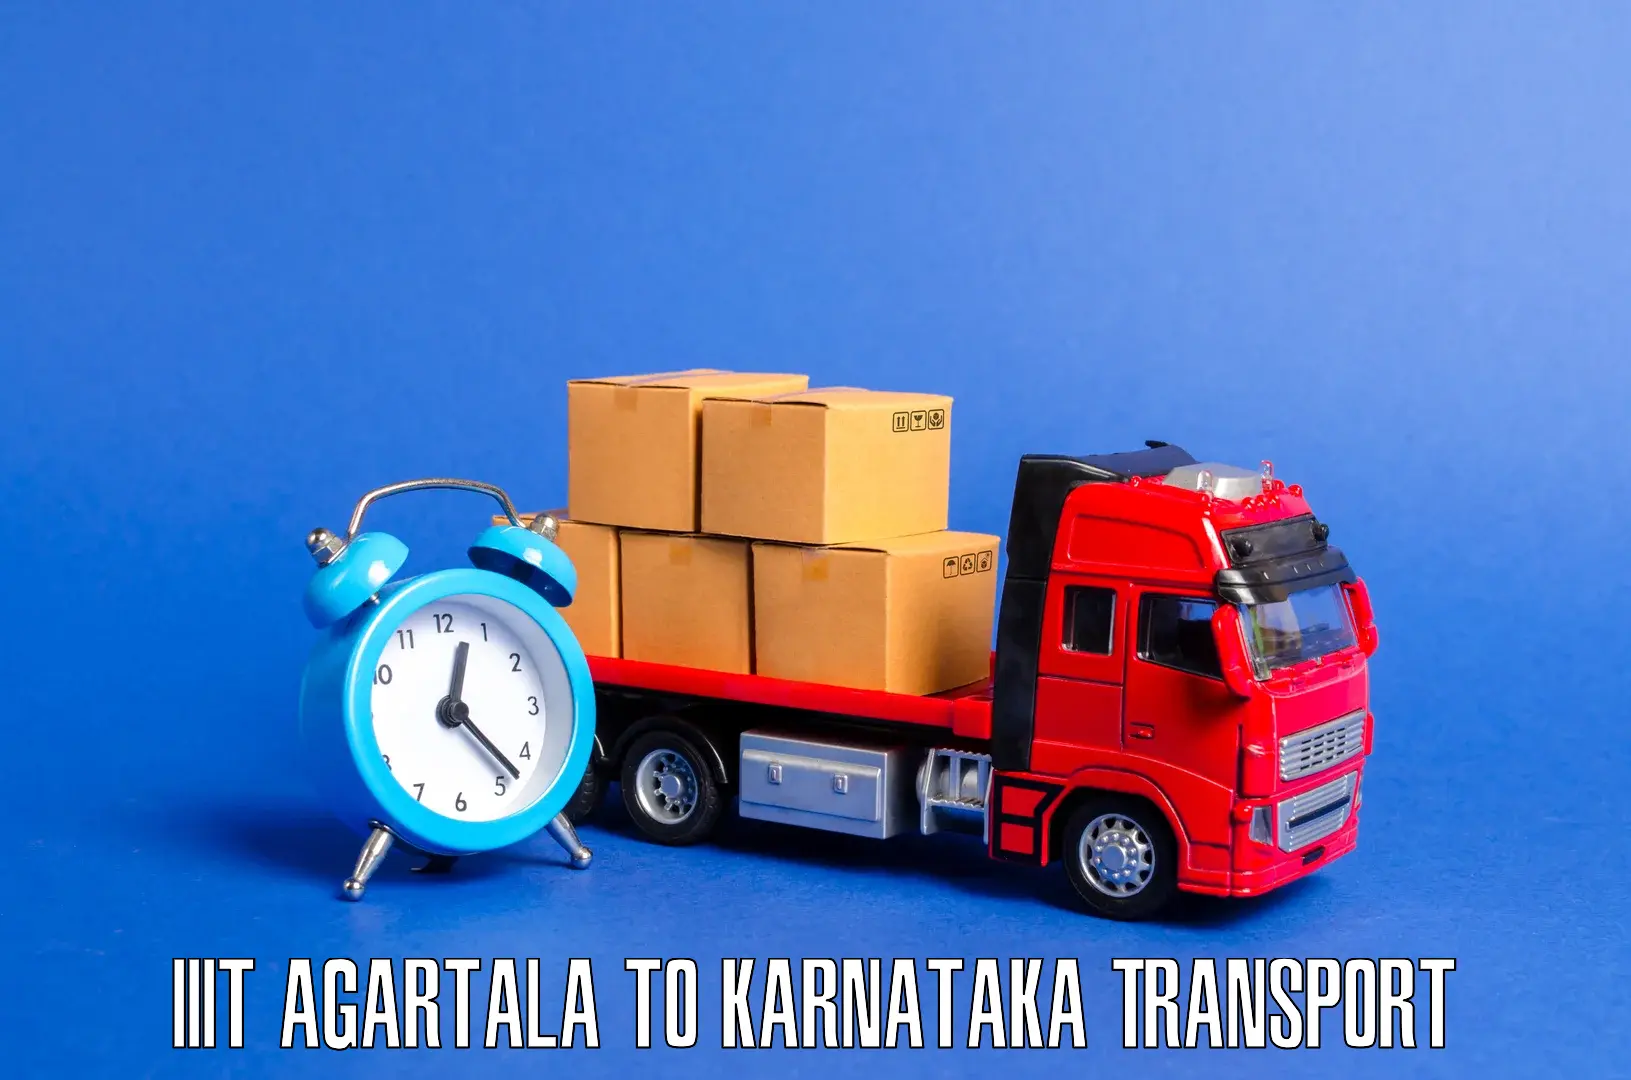 Air freight transport services IIIT Agartala to Ukkadagatri